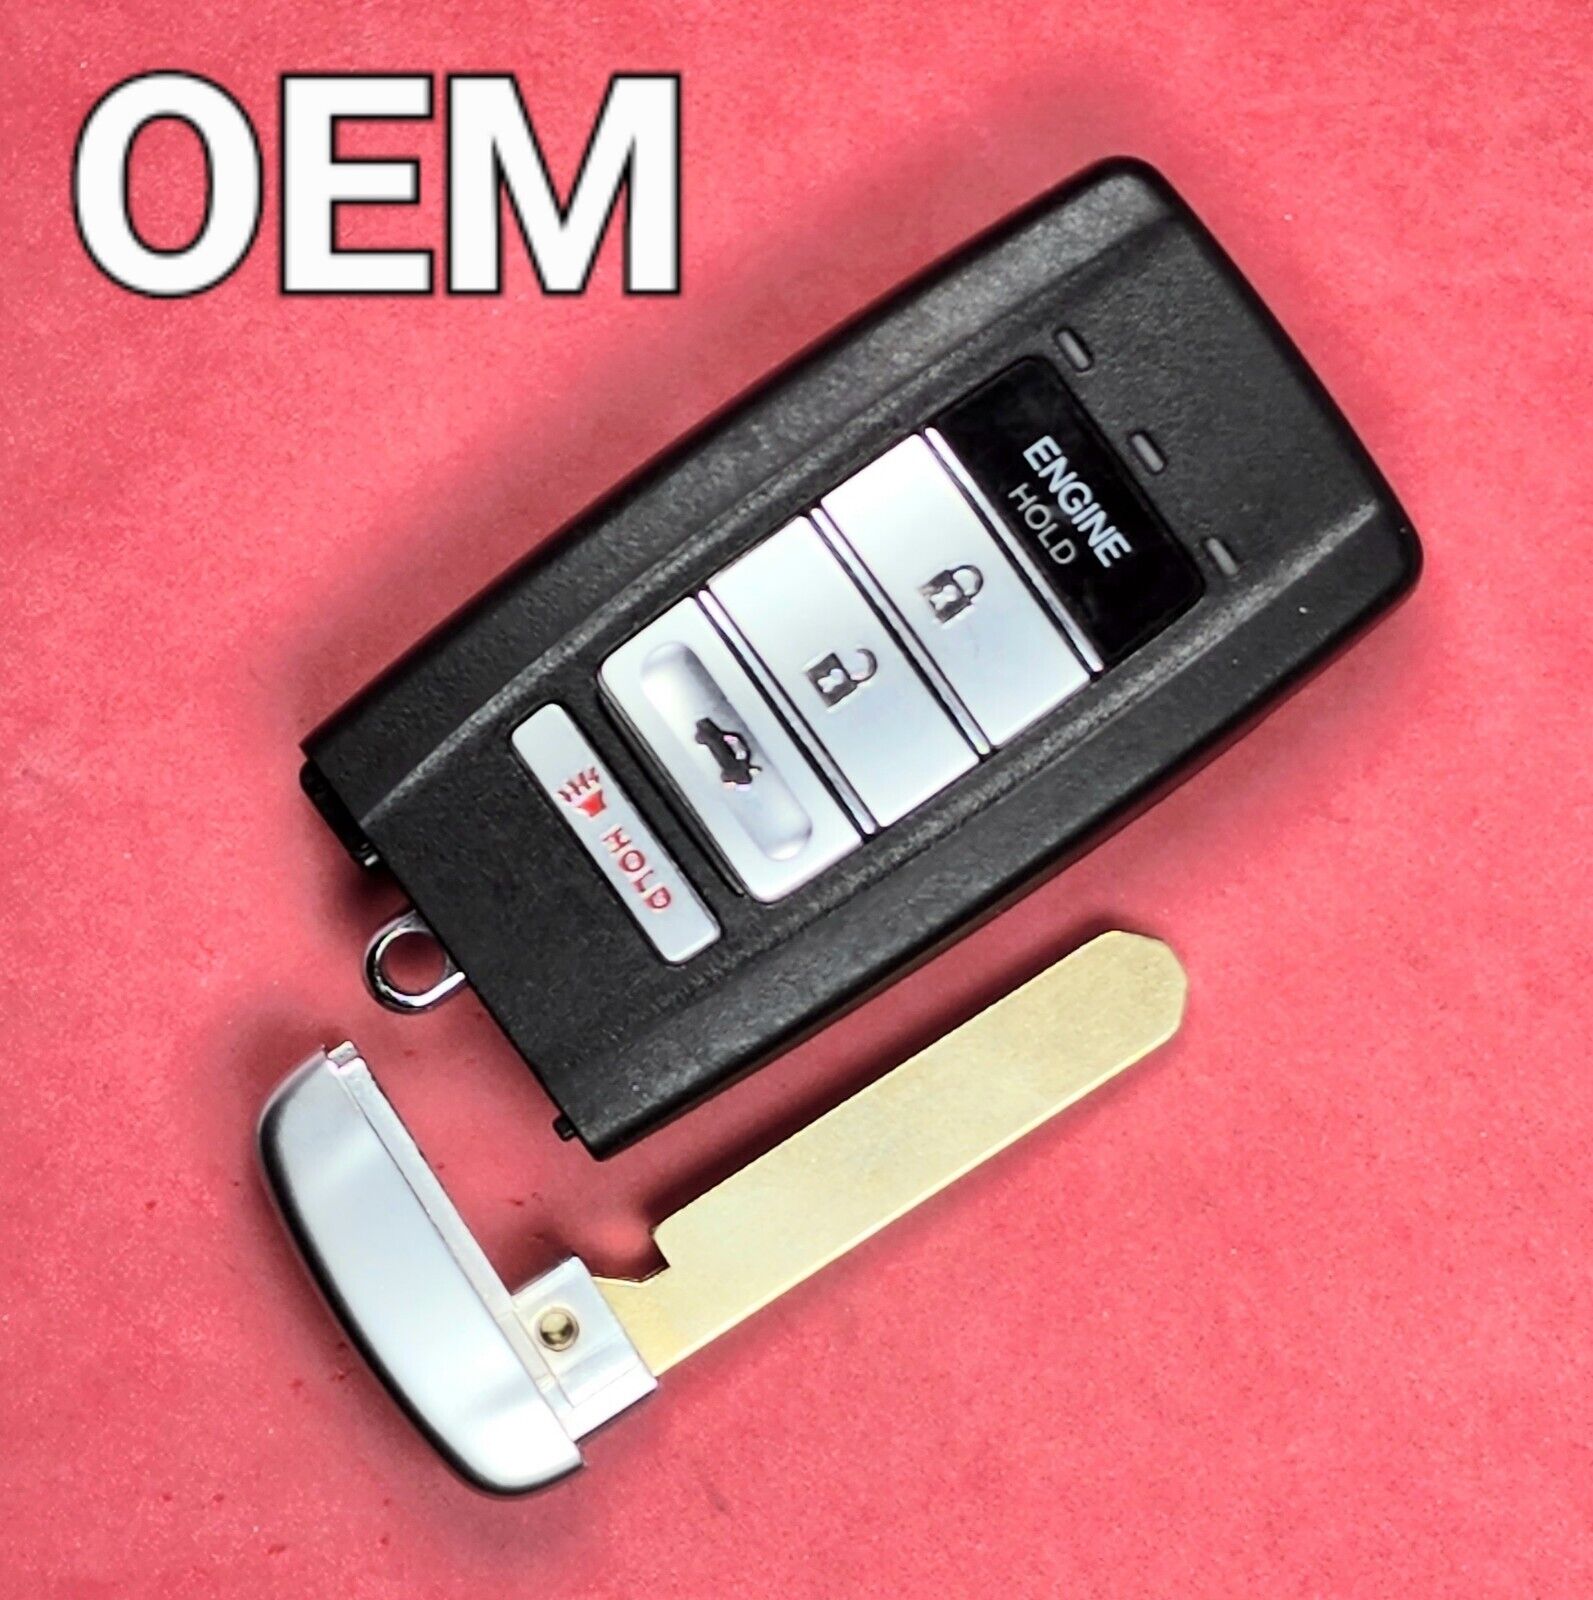 OEM Acura TLX ILX RLX Smart Key 5B Trunk / Remote Start 2WAY KR580399900 Driver2